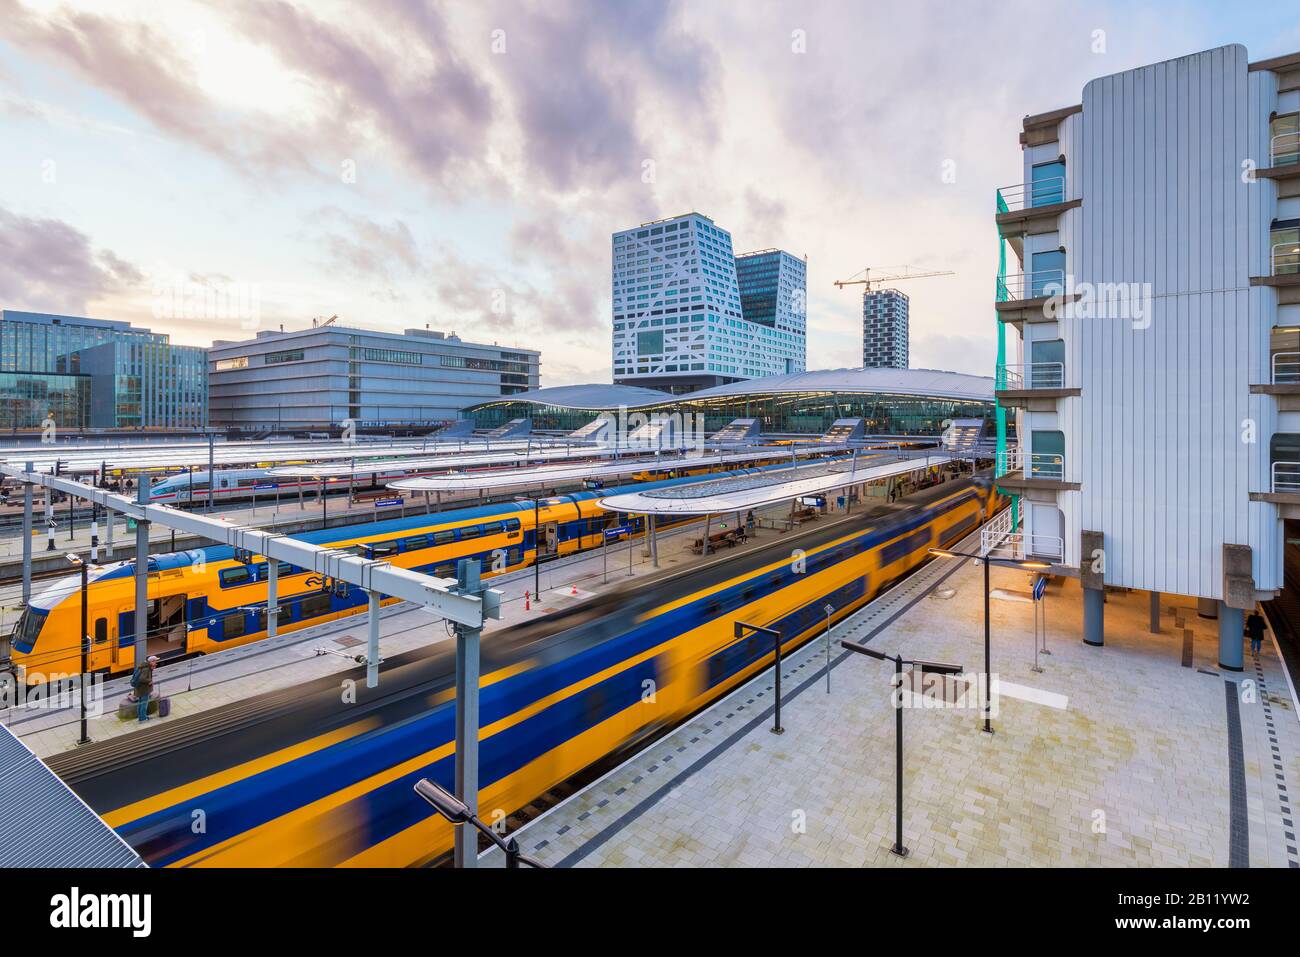 Salida Del Tren En La Estación Central De Utrecht, Países Bajos. Al estar situado en el centro del país, la estación central de Utrecht es un importante centro de tránsito. Foto de stock